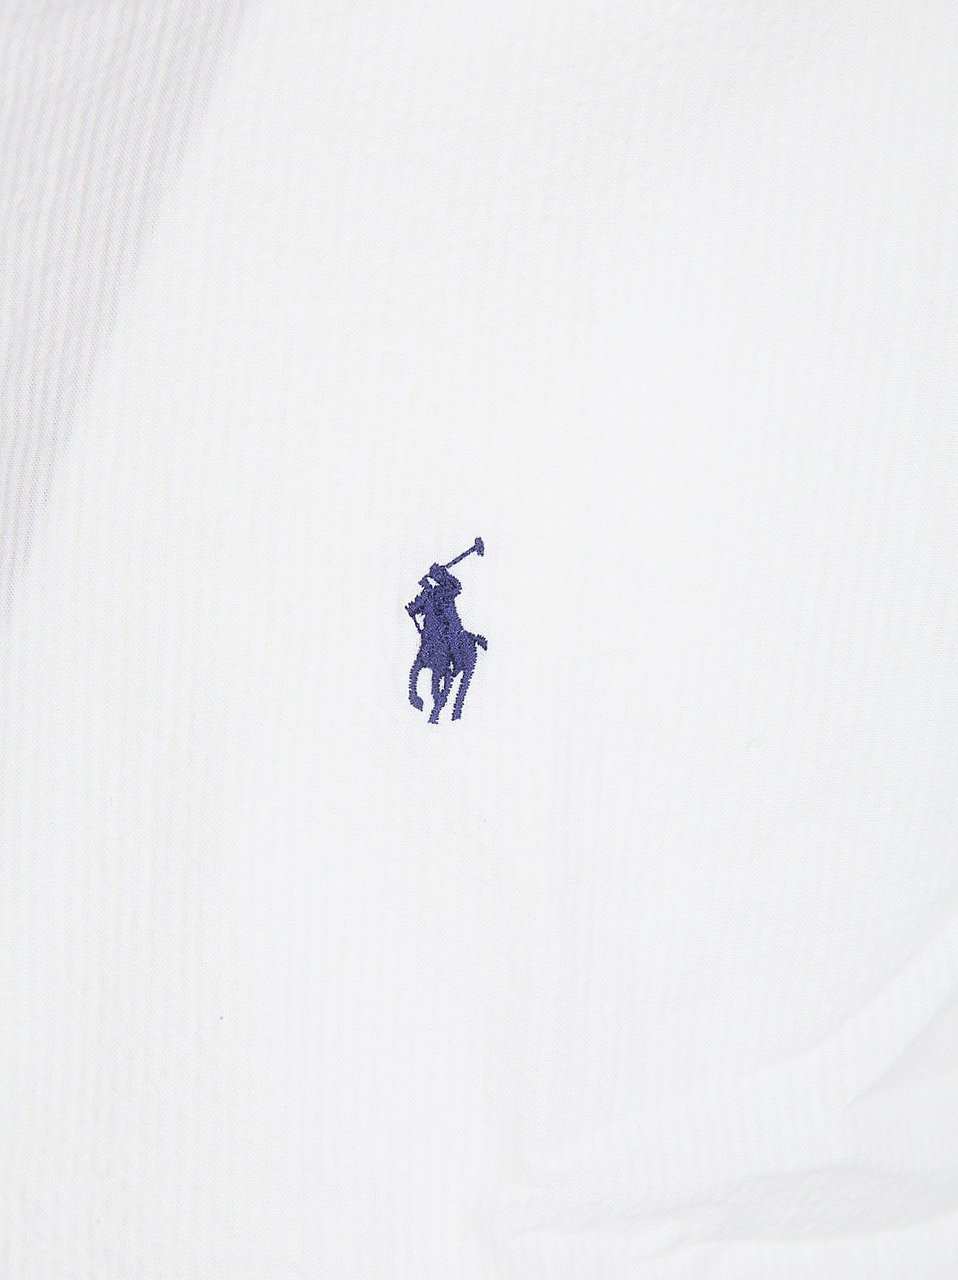 Ralph Lauren Long Sleeve Sport Shirt White Wit